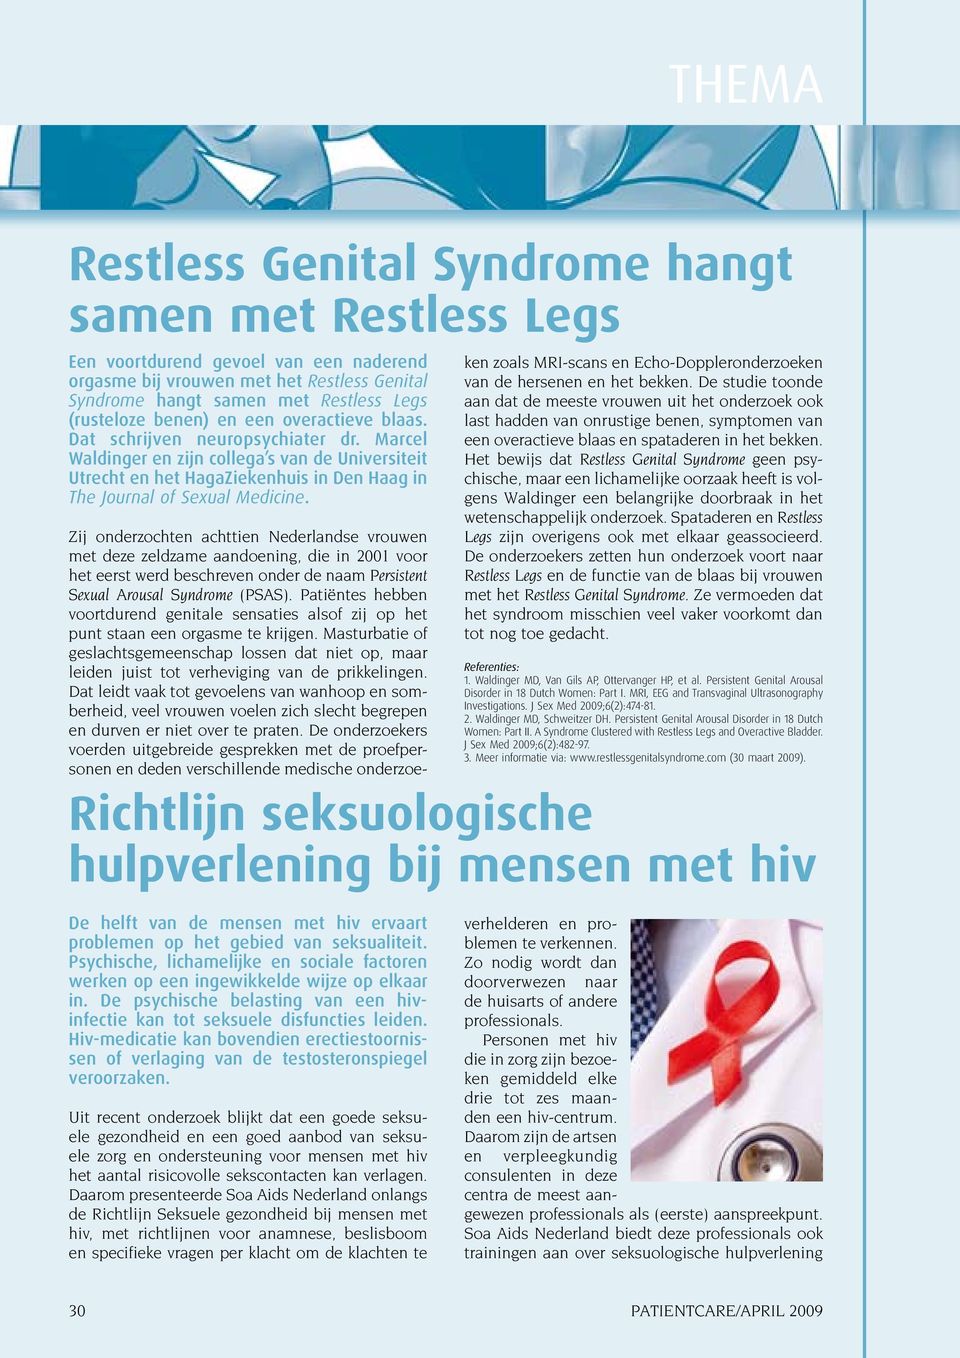 Zij onderzochten achttien Nederlandse vrouwen met deze zeldzame aandoening, die in 2001 voor het eerst werd beschreven onder de naam Persistent Sexual Arousal Syndrome (PSAS).